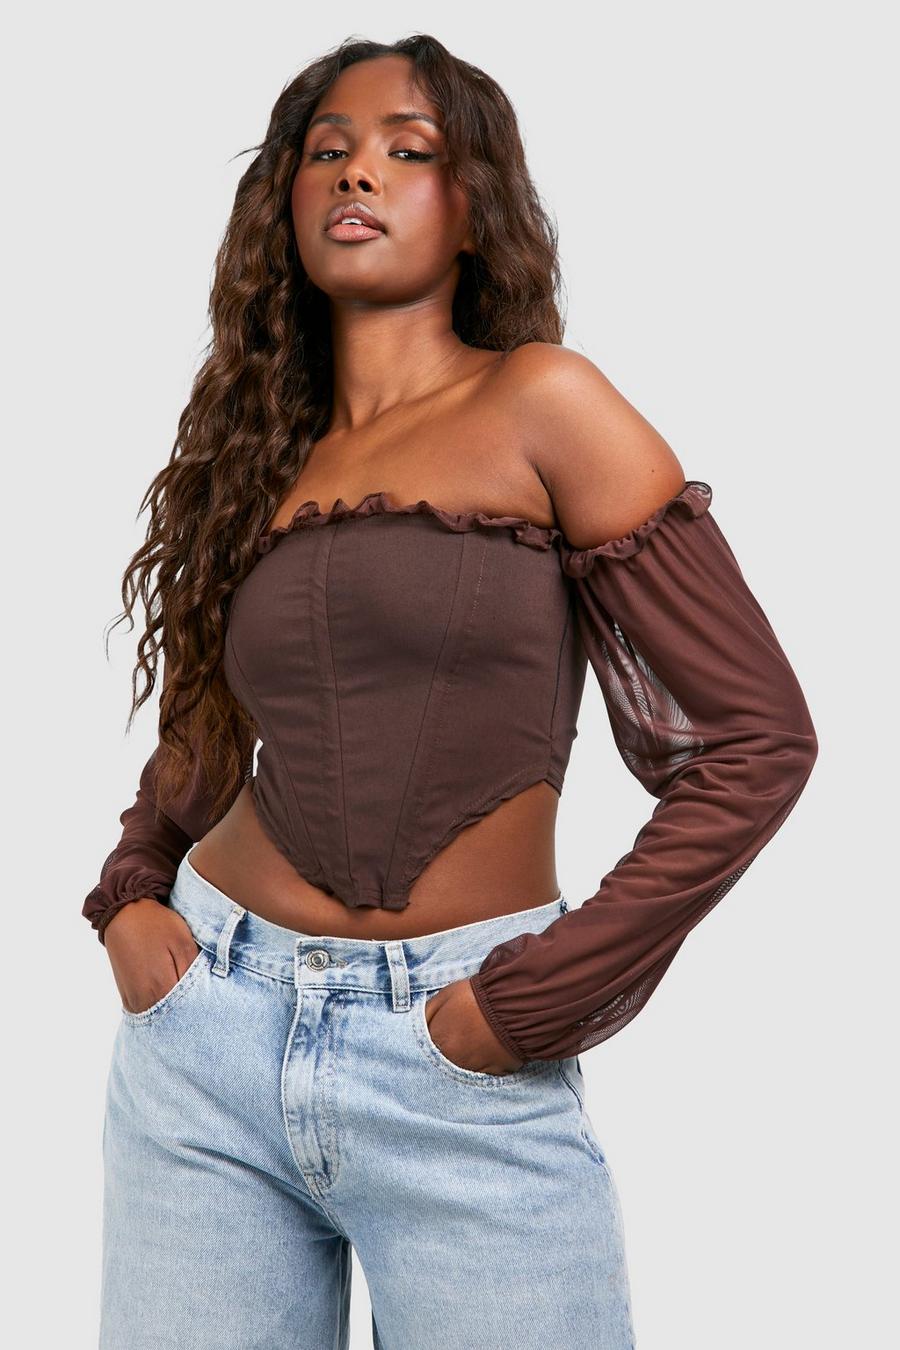 Douhoow Women Crop Top Mesh Sleeve T-Shirt Hollow Out Transparent Tops 